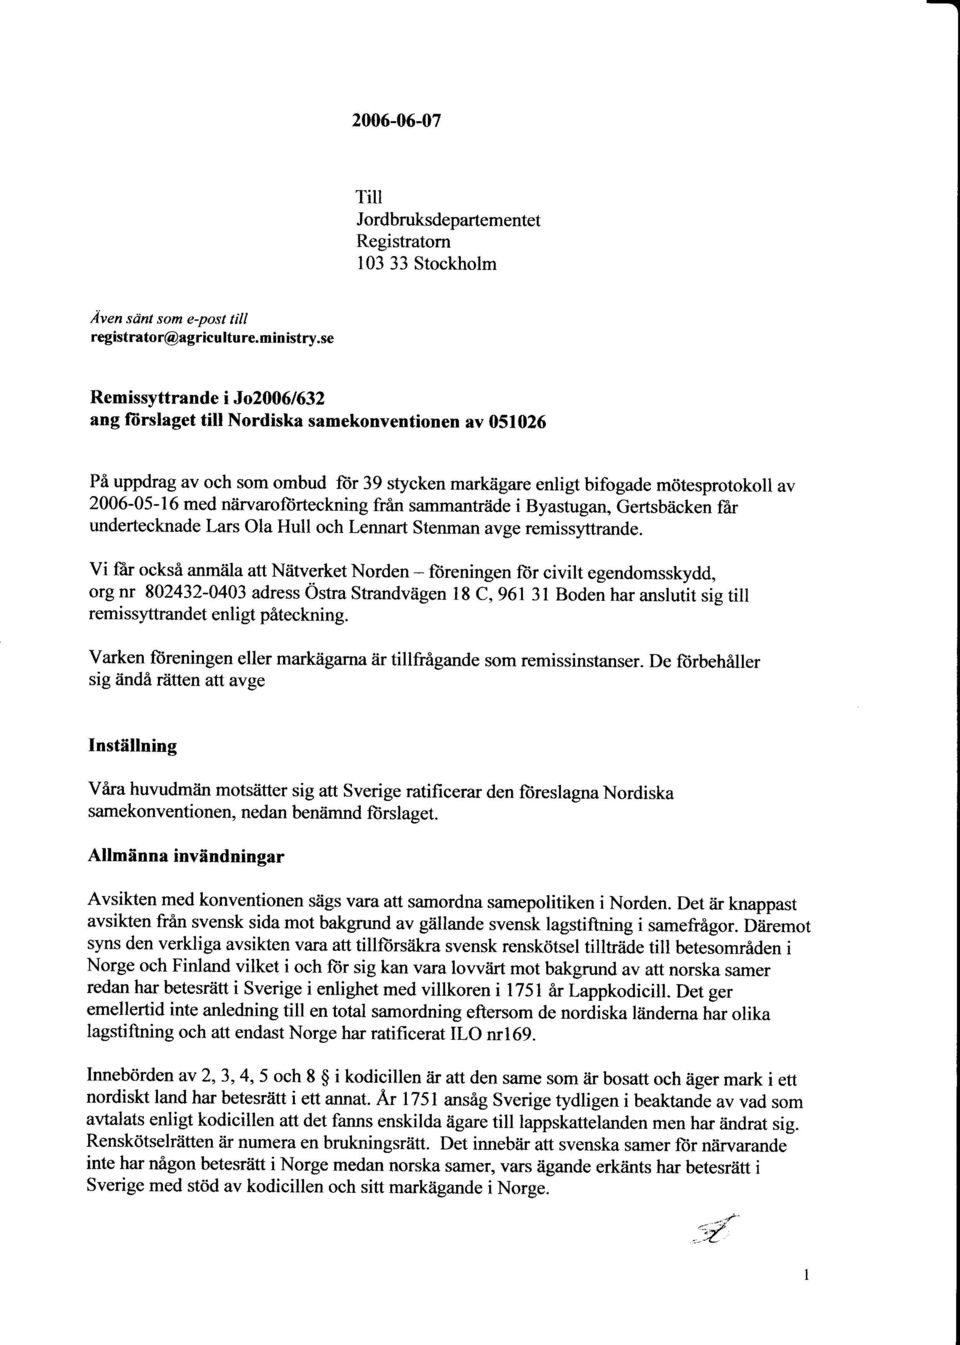 igare enligt bifogade m<itesprotokoll av 2006-05-16 med niirvaroftirteckning frin sammantriide i Byastugan, Gertsbiicken fir undertecknade Lars ola Hull och Lennart Stenman avge remissyttrande.